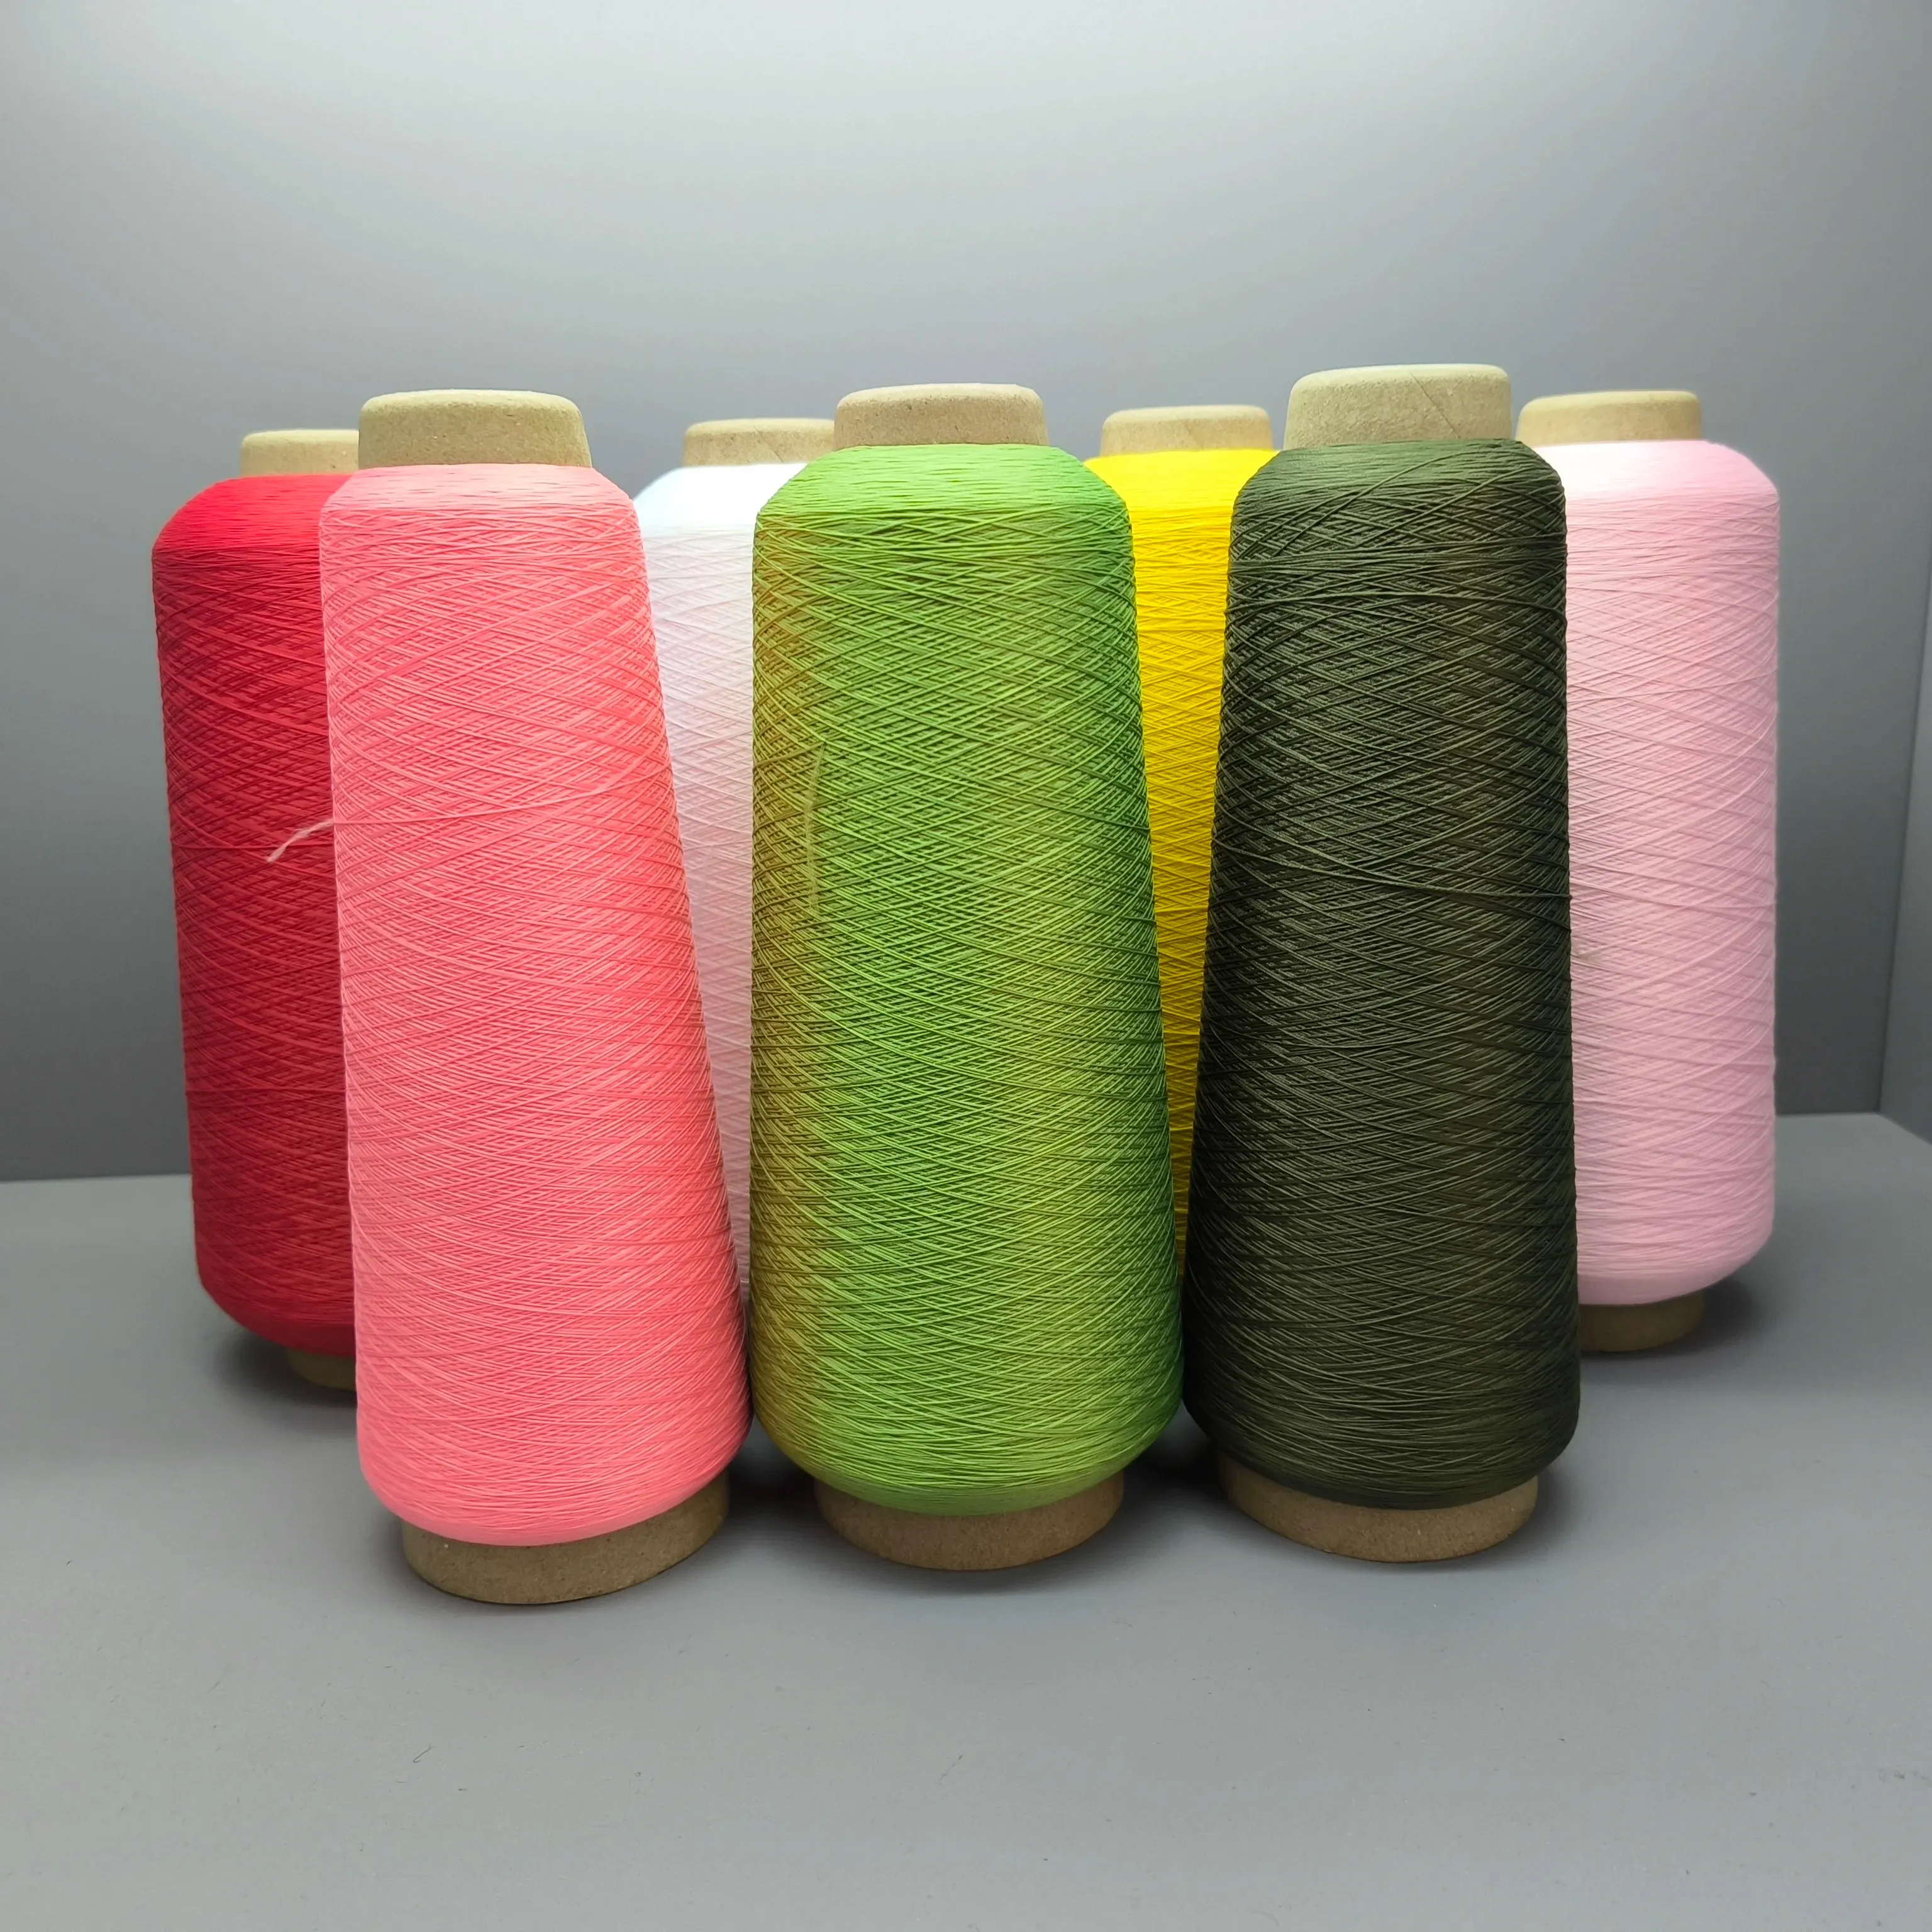 Bán buôn đa màu căng cao polyester 70d/2 Giả nylon sợi được sử dụng trong dệt may